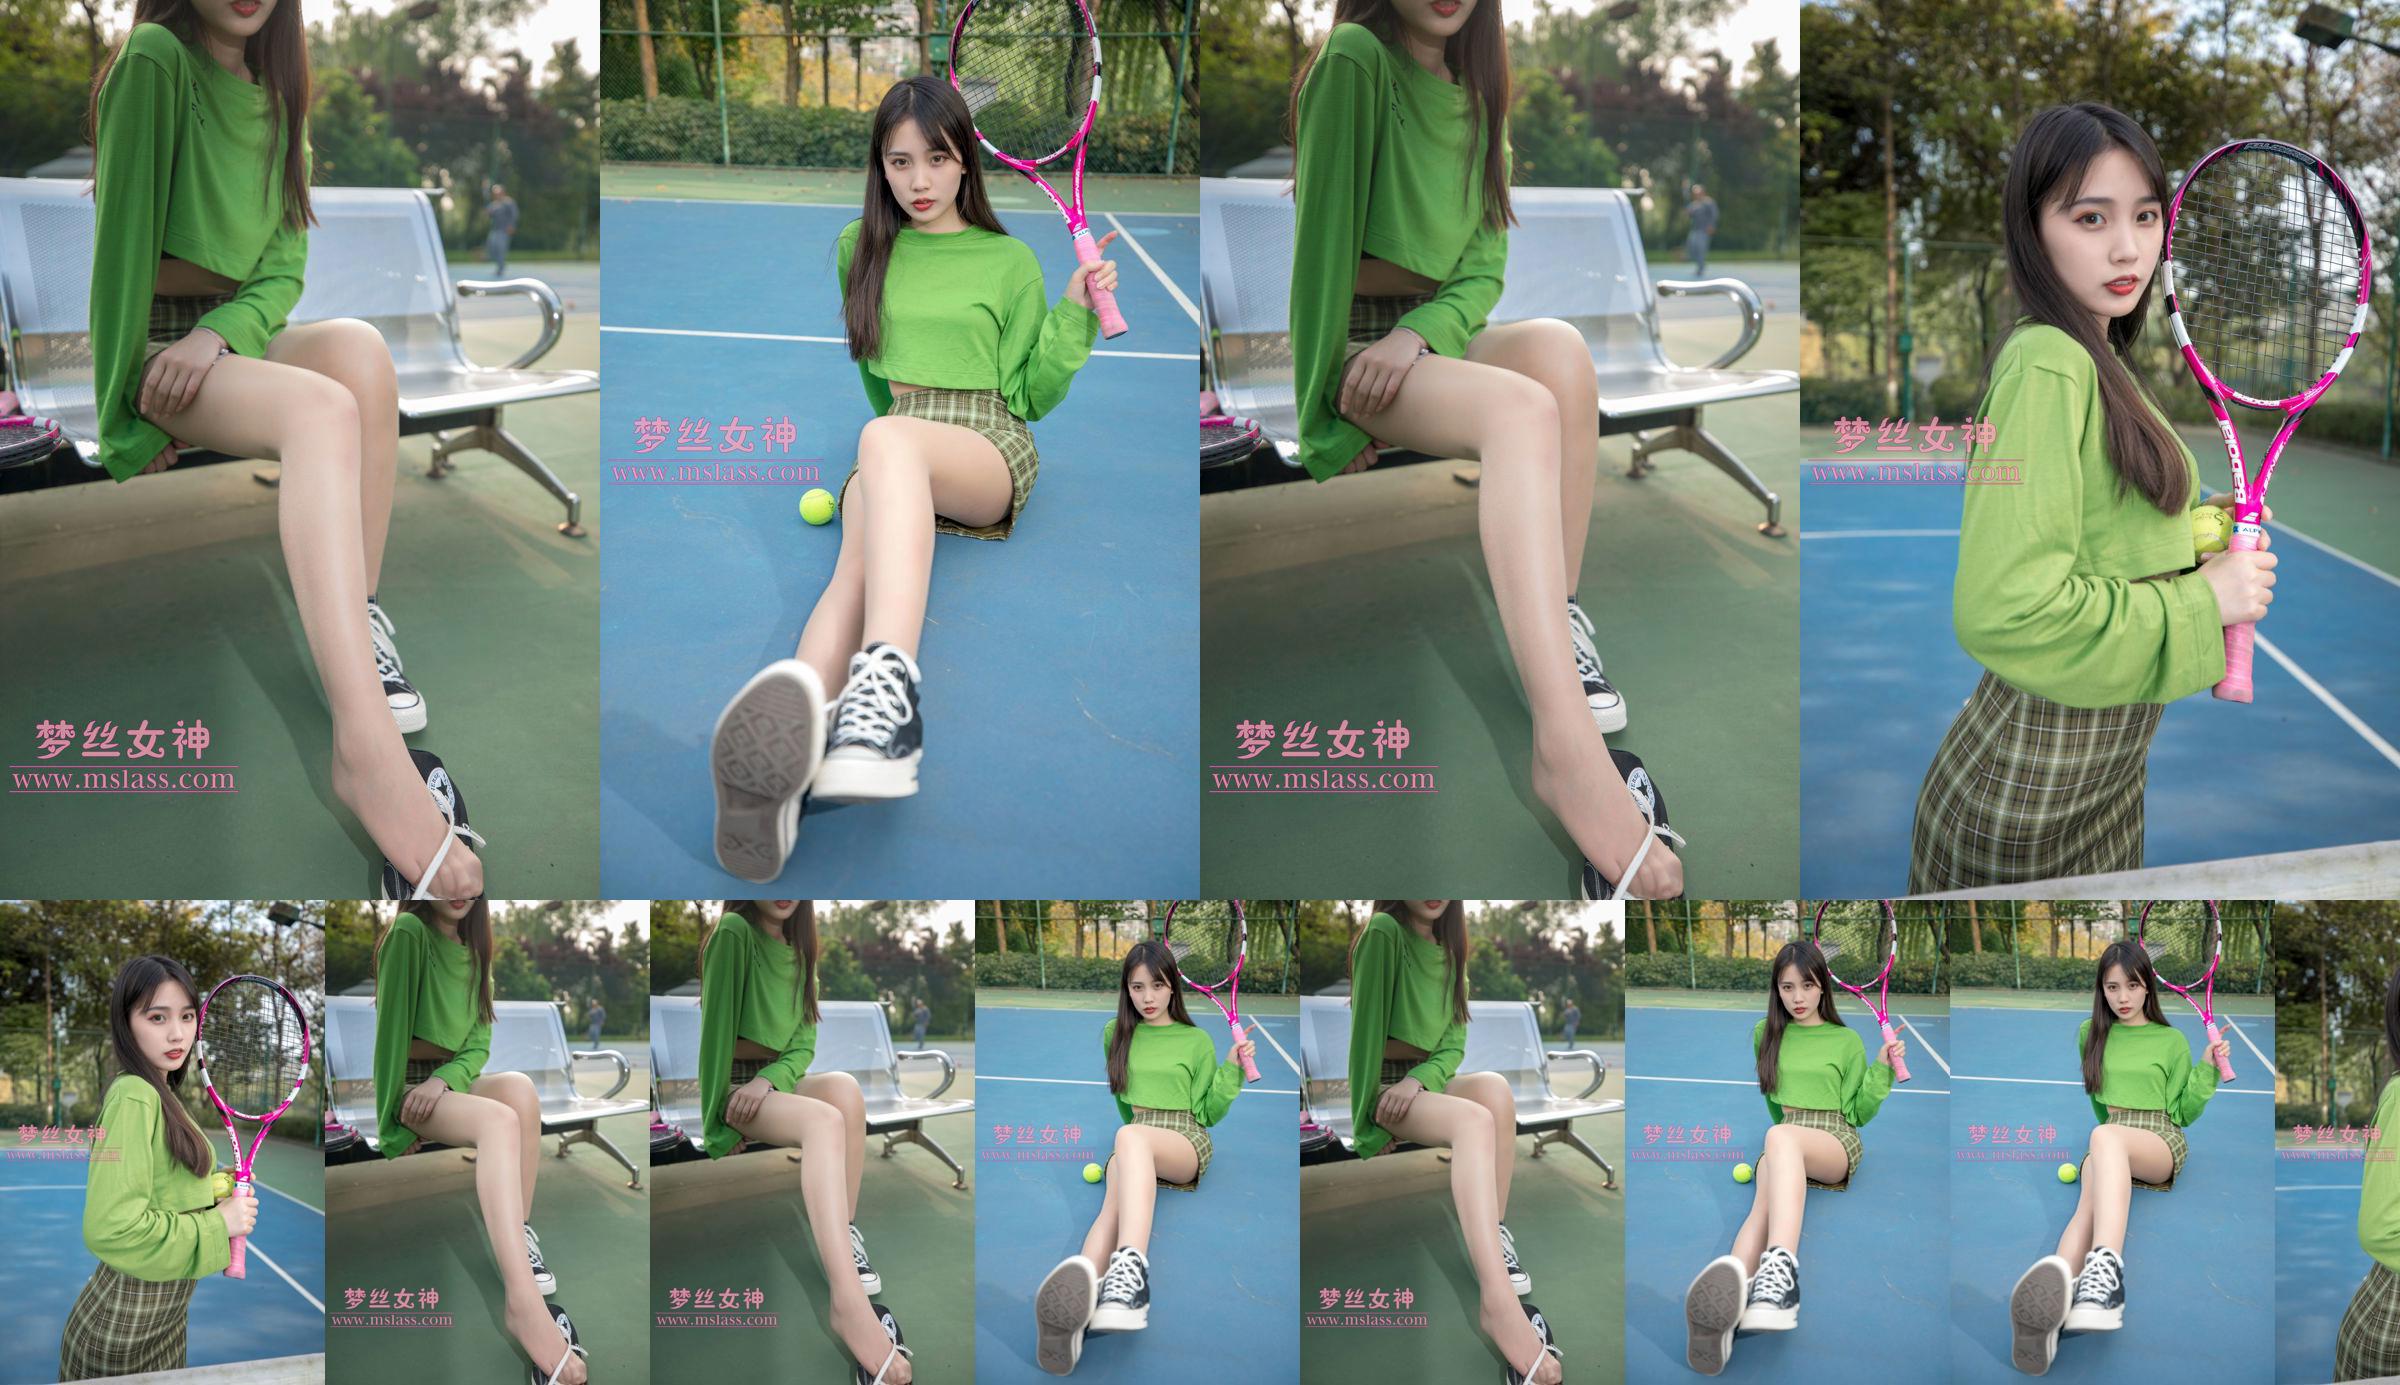 [Deusa dos Sonhos MSLASS] Xiang Xuan Tennis Girl No.c81dd9 Página 2